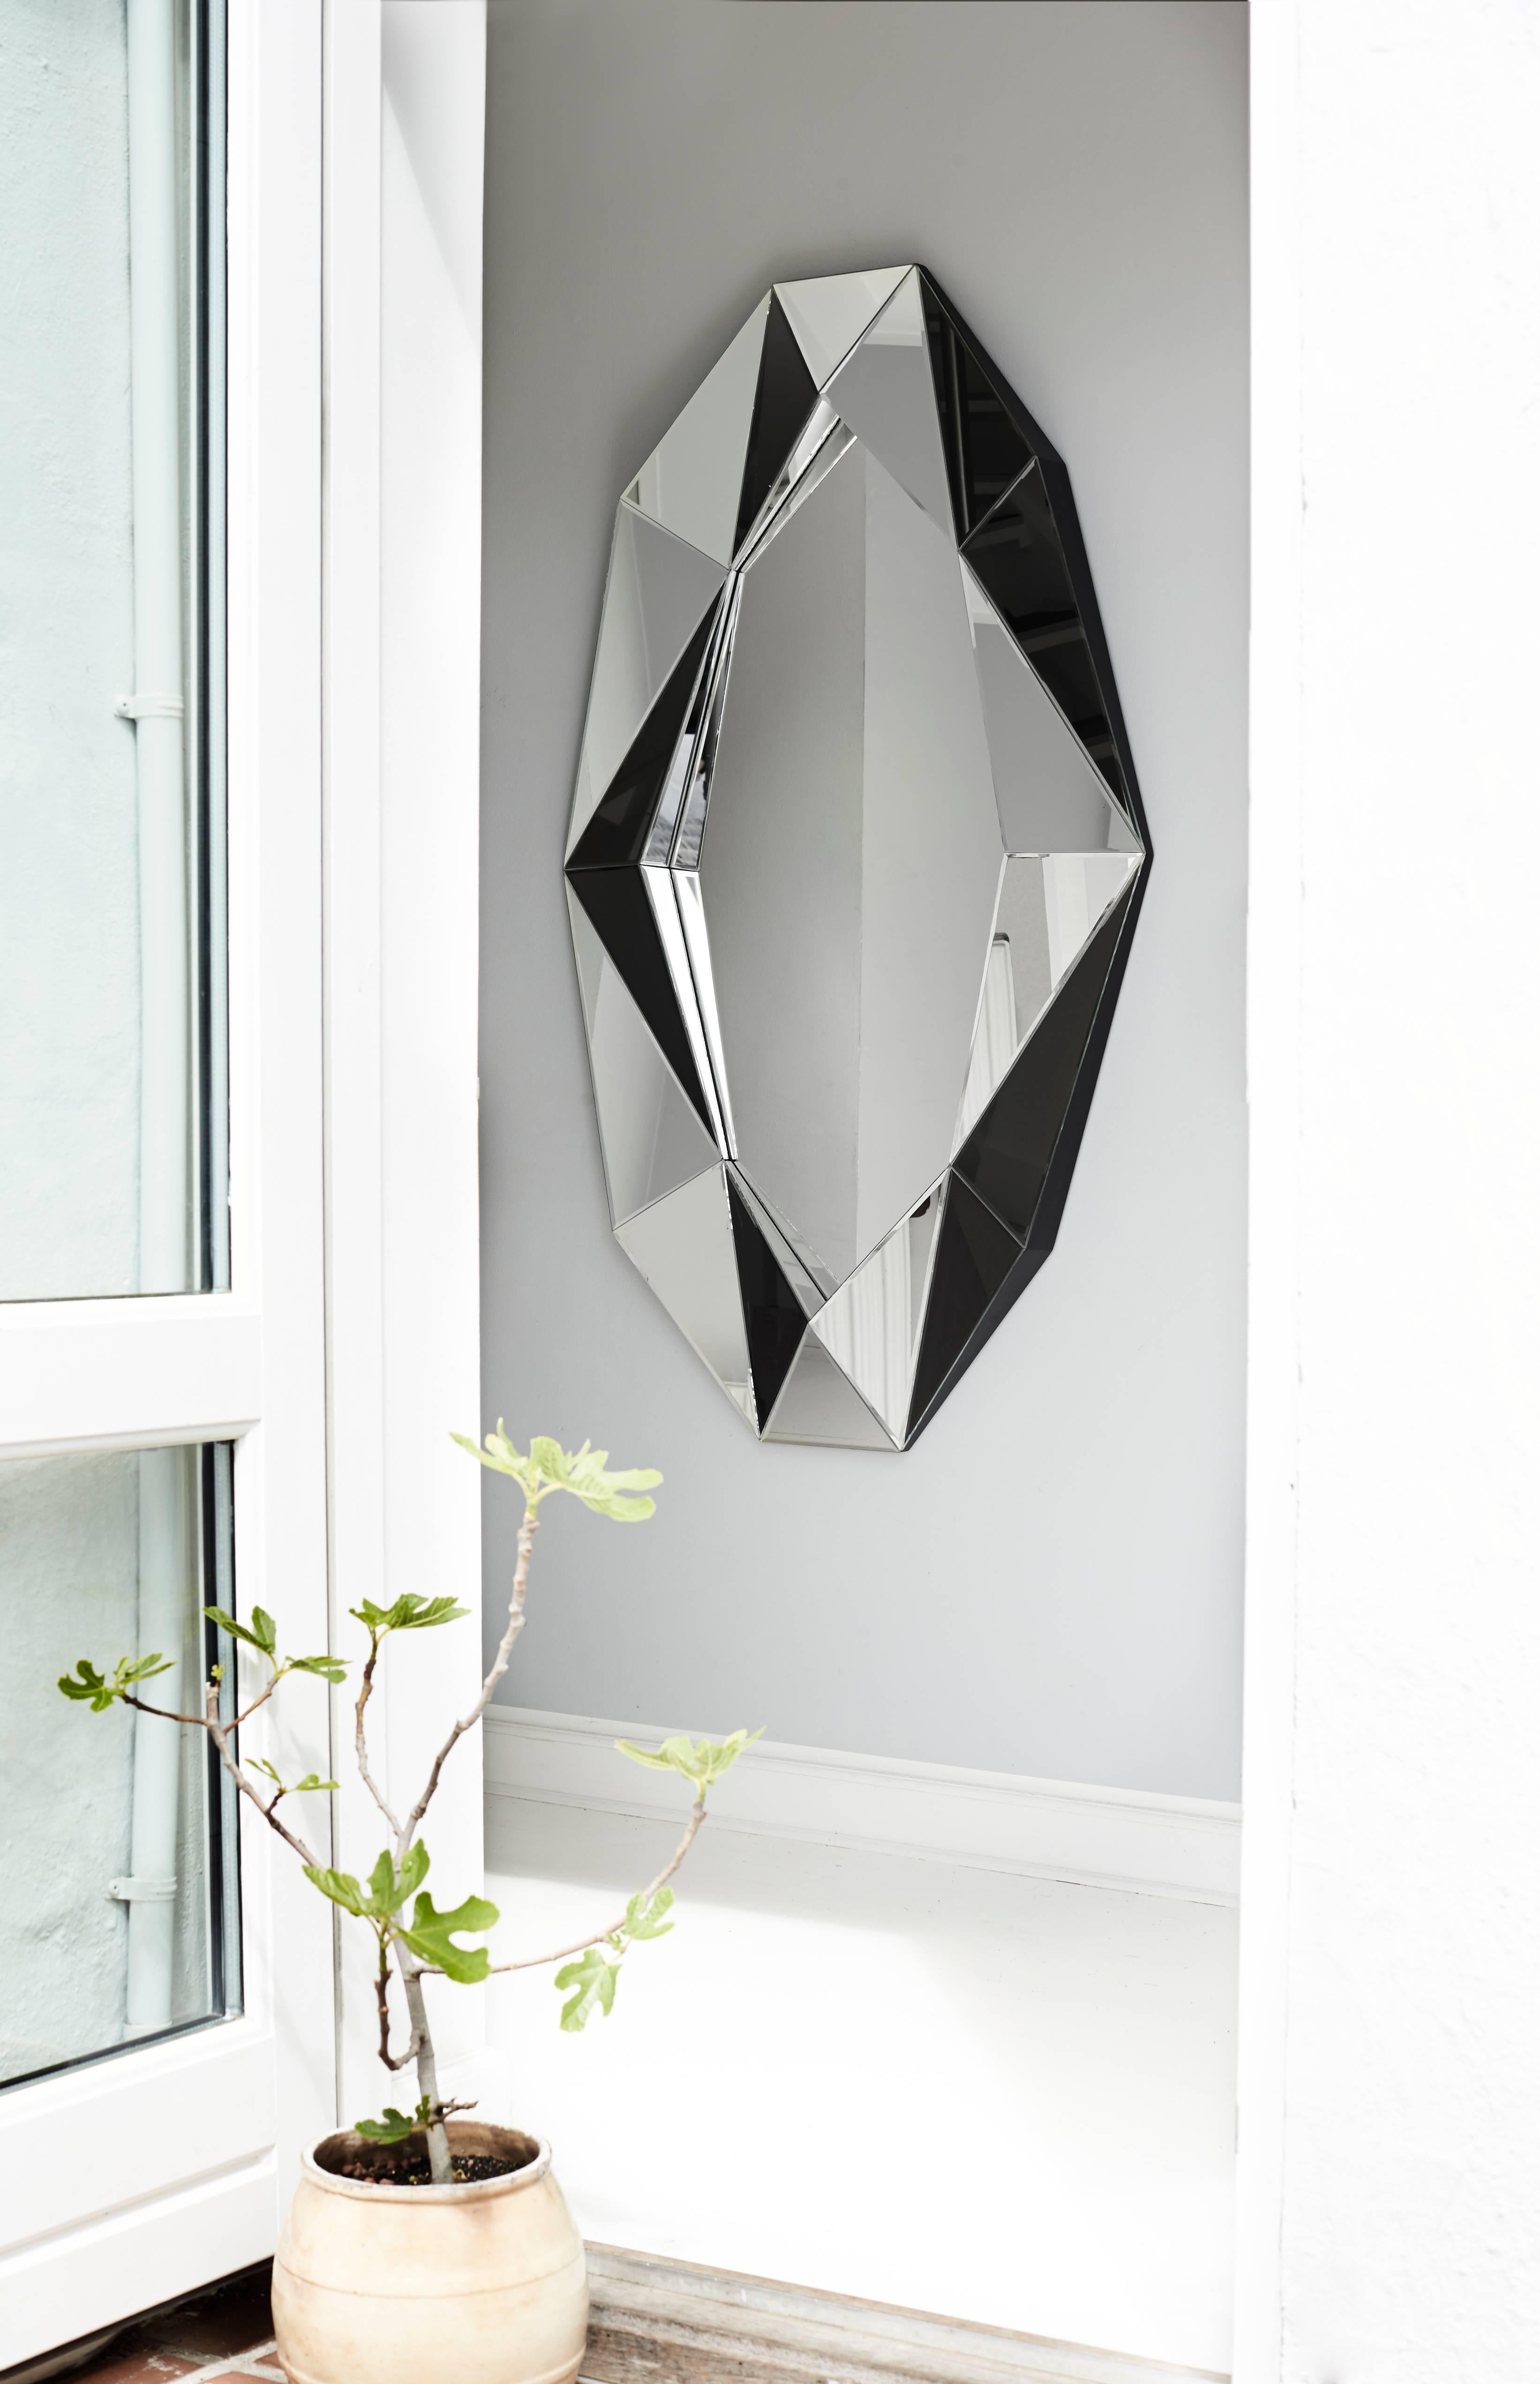 Diamant-Dekospiegel
Spiegel
4mm facettierter Spiegel auf schwarz lackiertem MDF
Maße: L 82 x H 140 x T 6,7cm

Der luxuriöse handgefertigte Diamant-Spiegel groß ist ein schillernder, einzigartiger, vom Art Deco inspirierter Spiegel. Er verleiht jedem